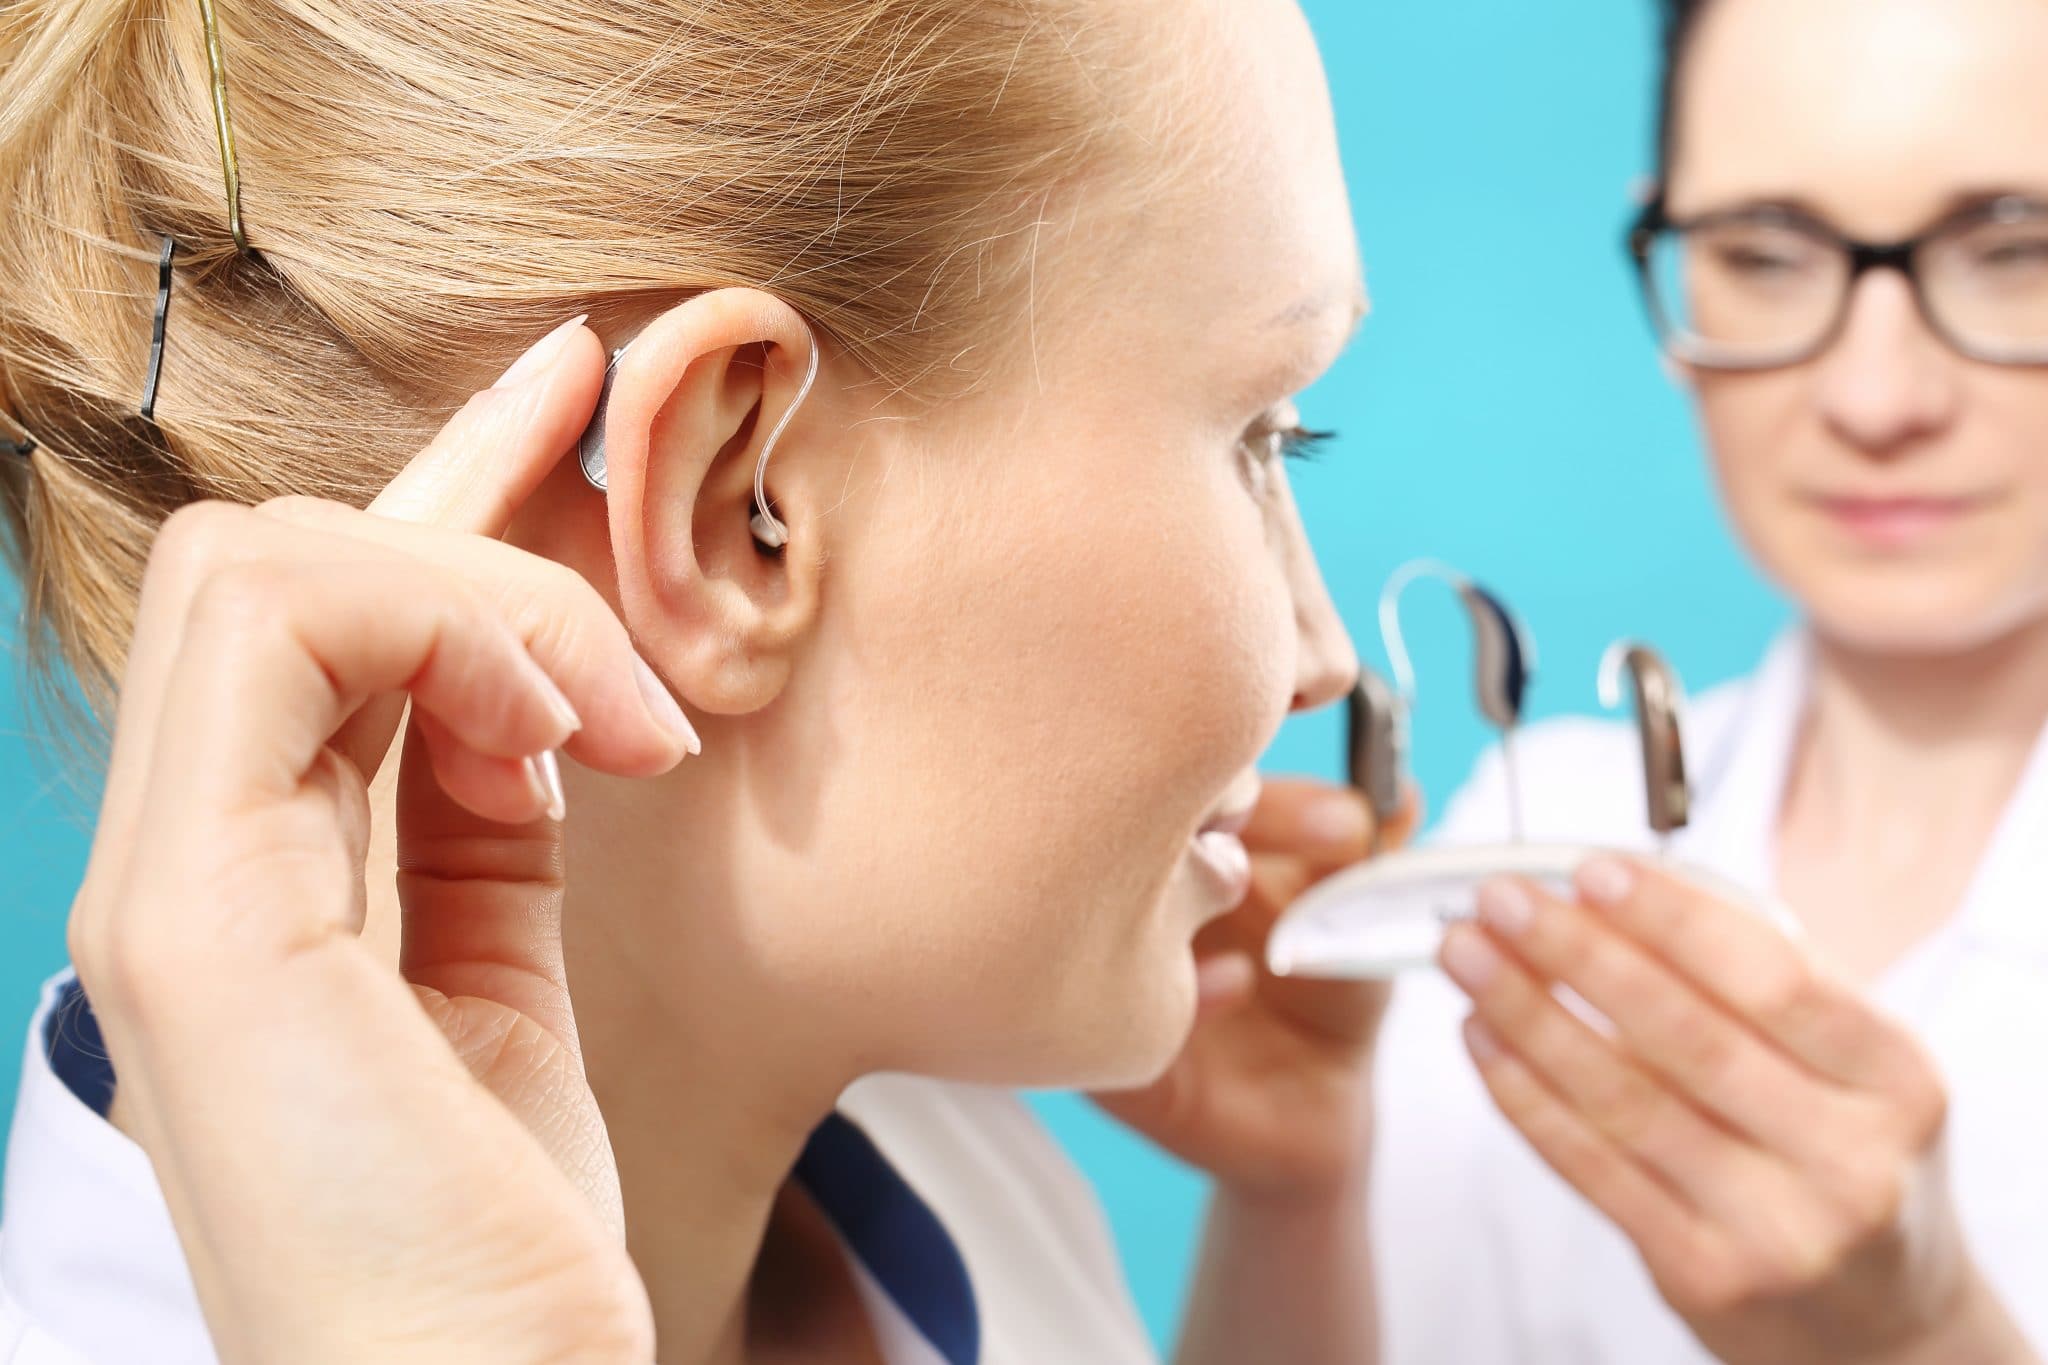 Femme ayant des problèmes d'audition insérant un appareil auditif avec l'aide d'un professionnel de la santé.